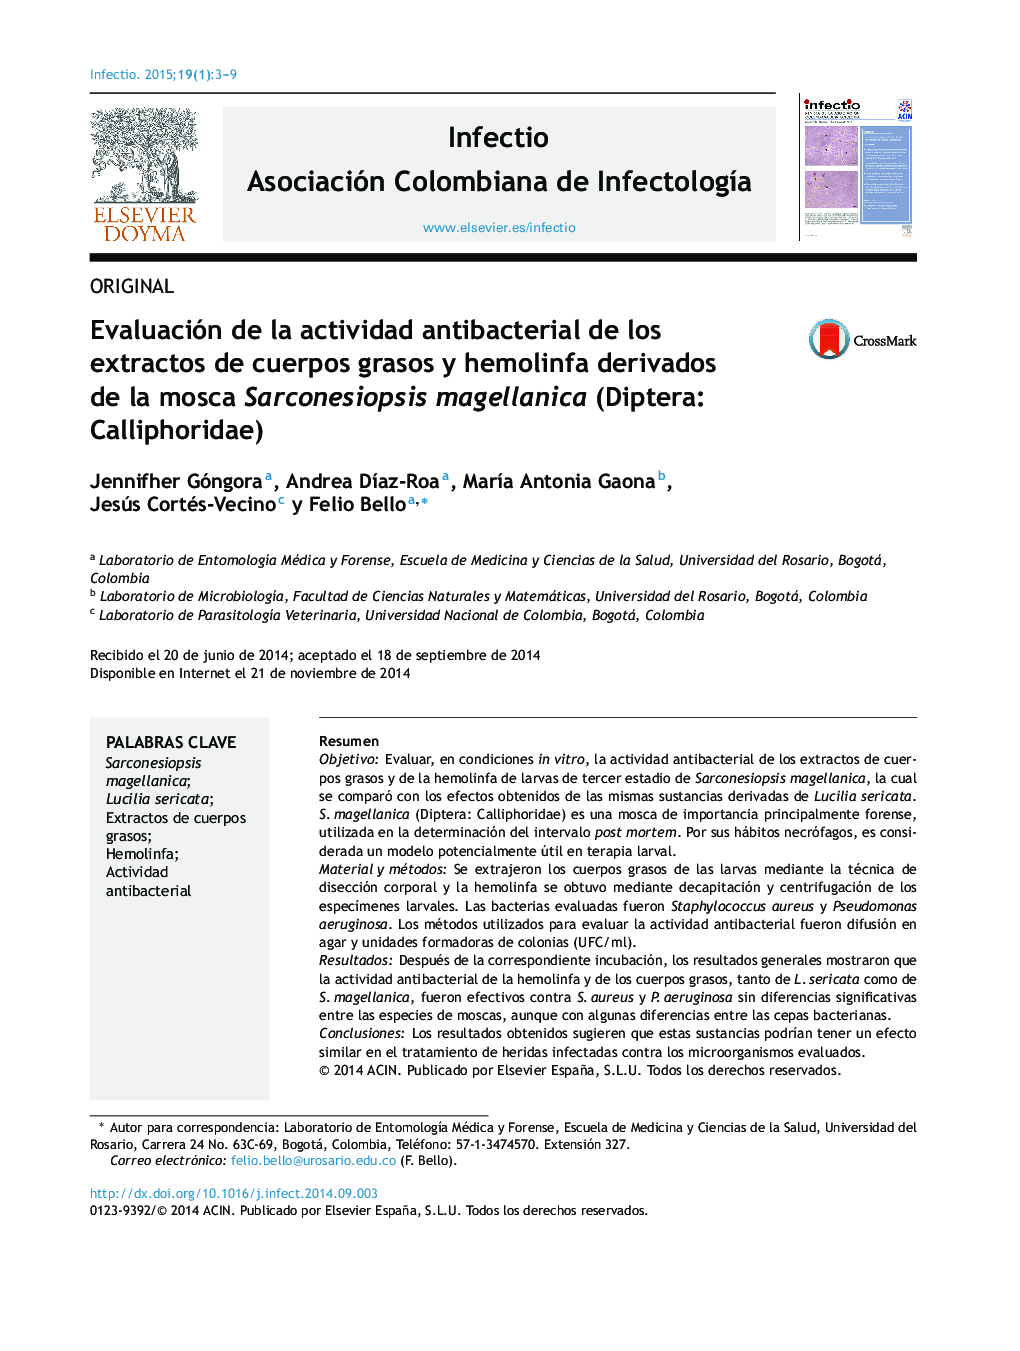 Evaluación de la actividad antibacterial de los extractos de cuerpos grasos y hemolinfa derivados de la mosca Sarconesiopsis magellanica (Diptera: Calliphoridae)